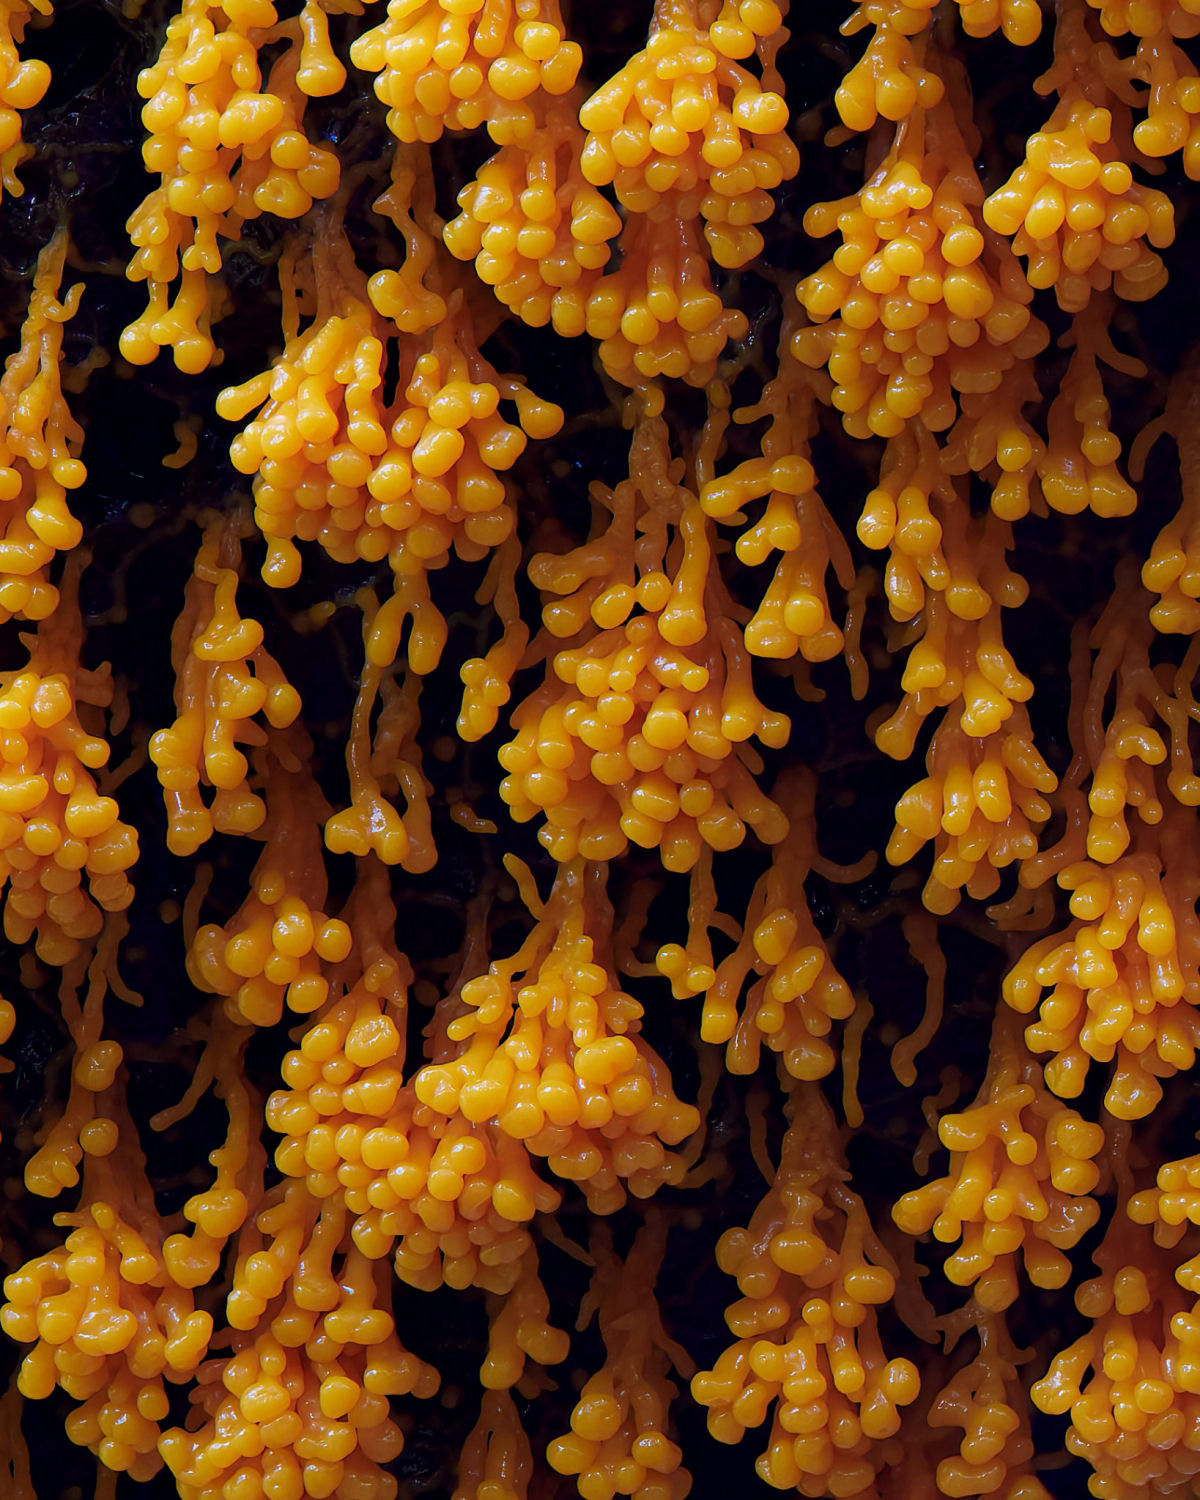 Macrofotografias mostram a espantosa biodiversidade dos fungos 06